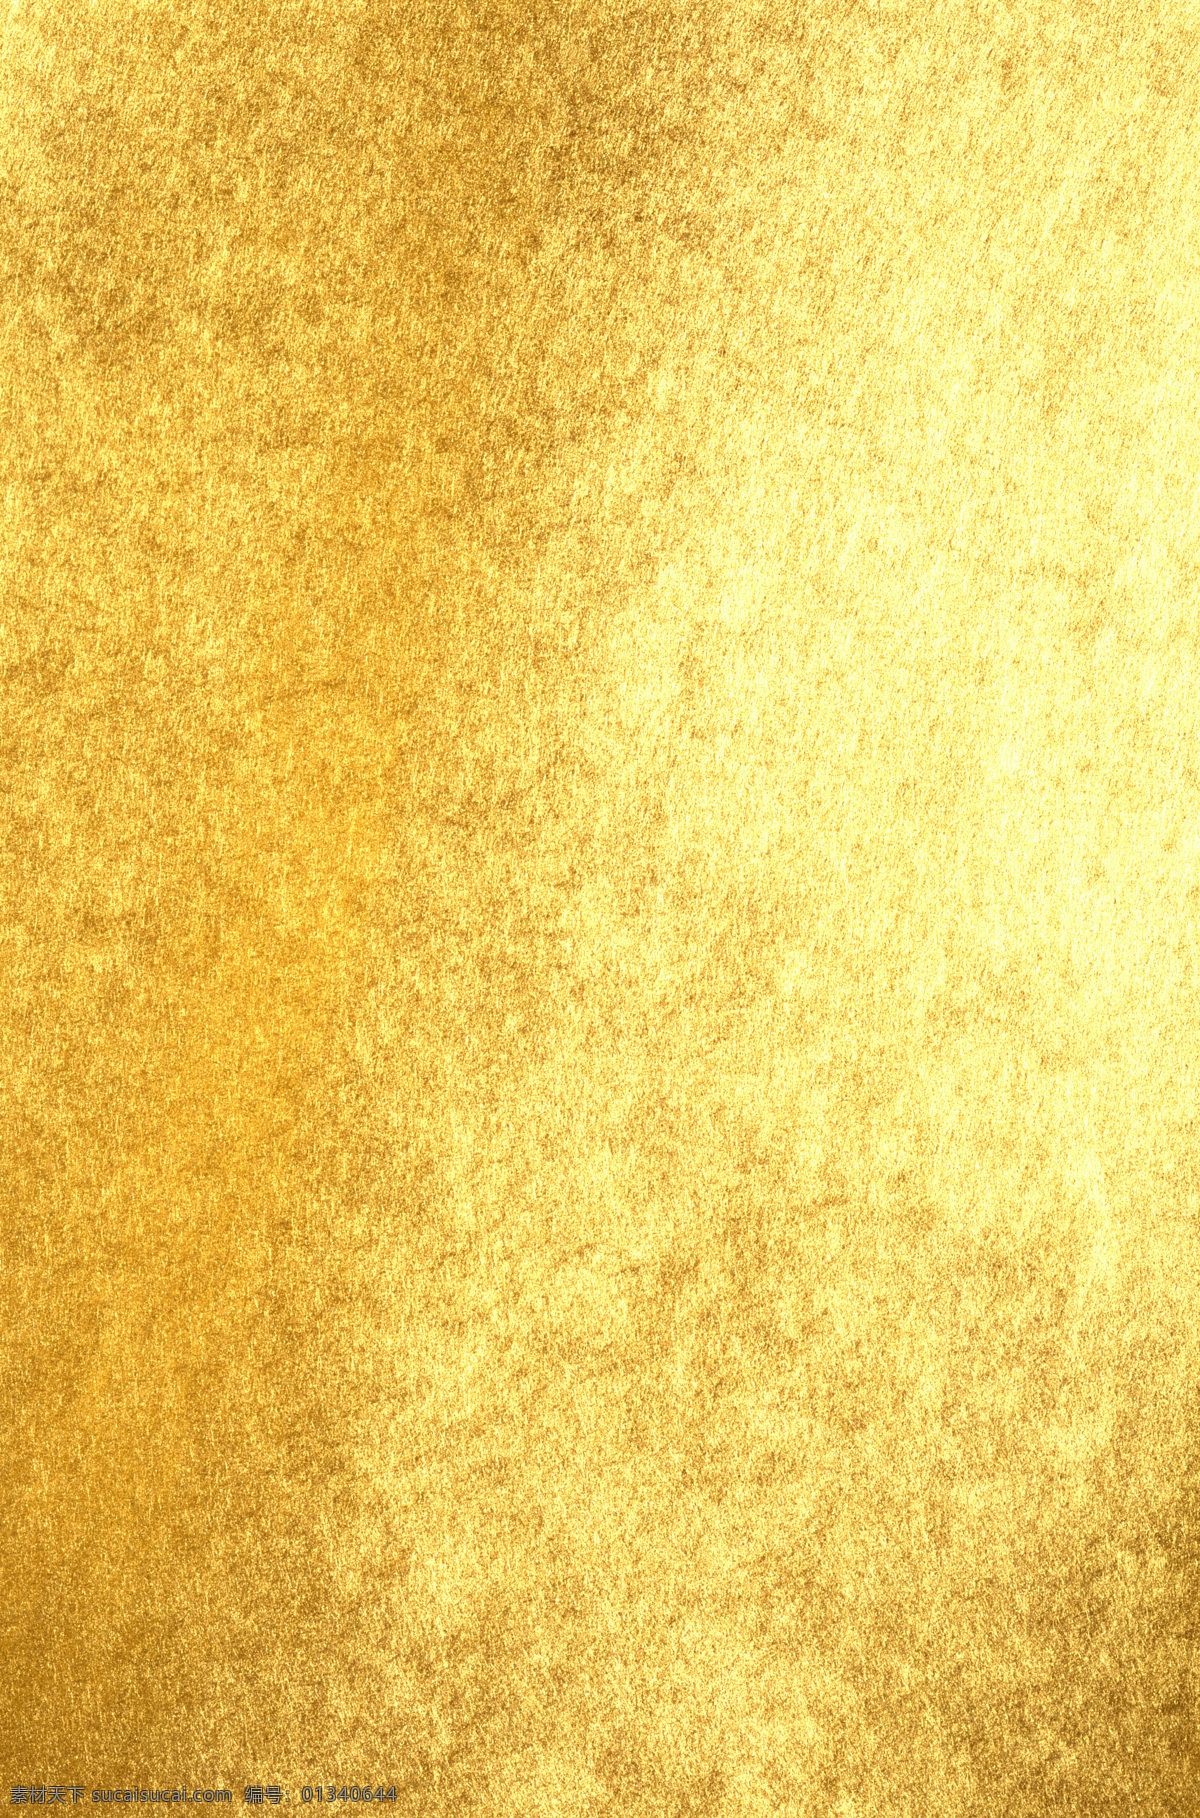 金色背景 质感 黄色图片 金色 黄色 金色纹理 底纹边框 背景底纹